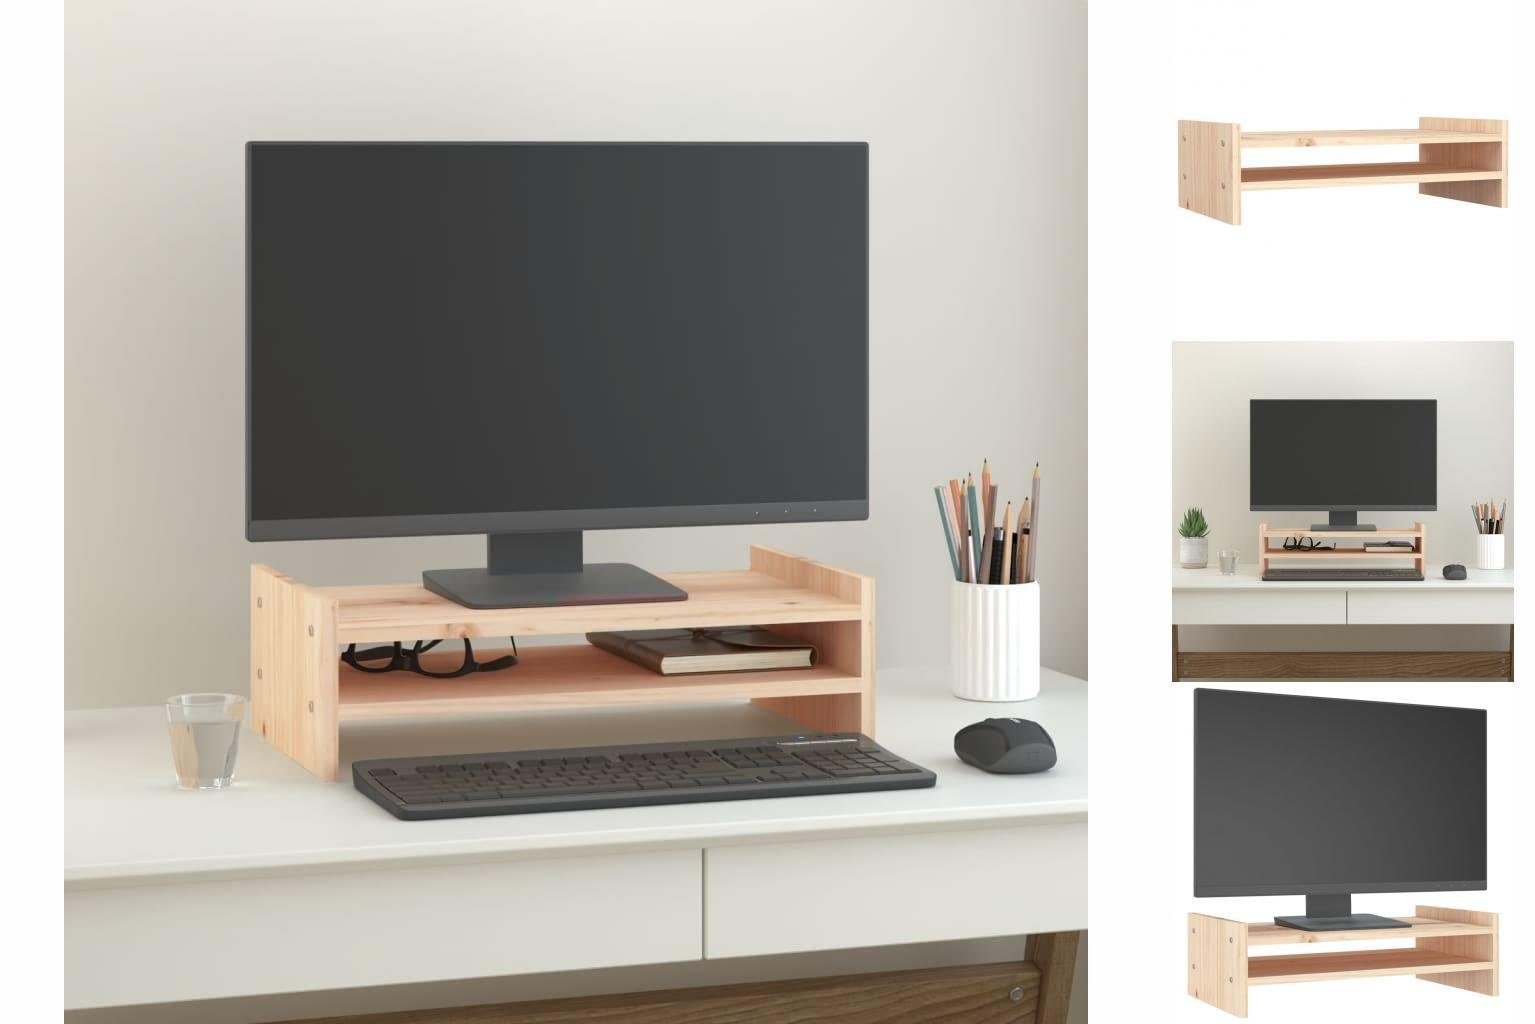 vidaXL Monitorständer 50x27x15 cm Massivholz Kiefer Erhöhung Bildschirm Tisch Monitor-Halterung Natur | Steckdosen